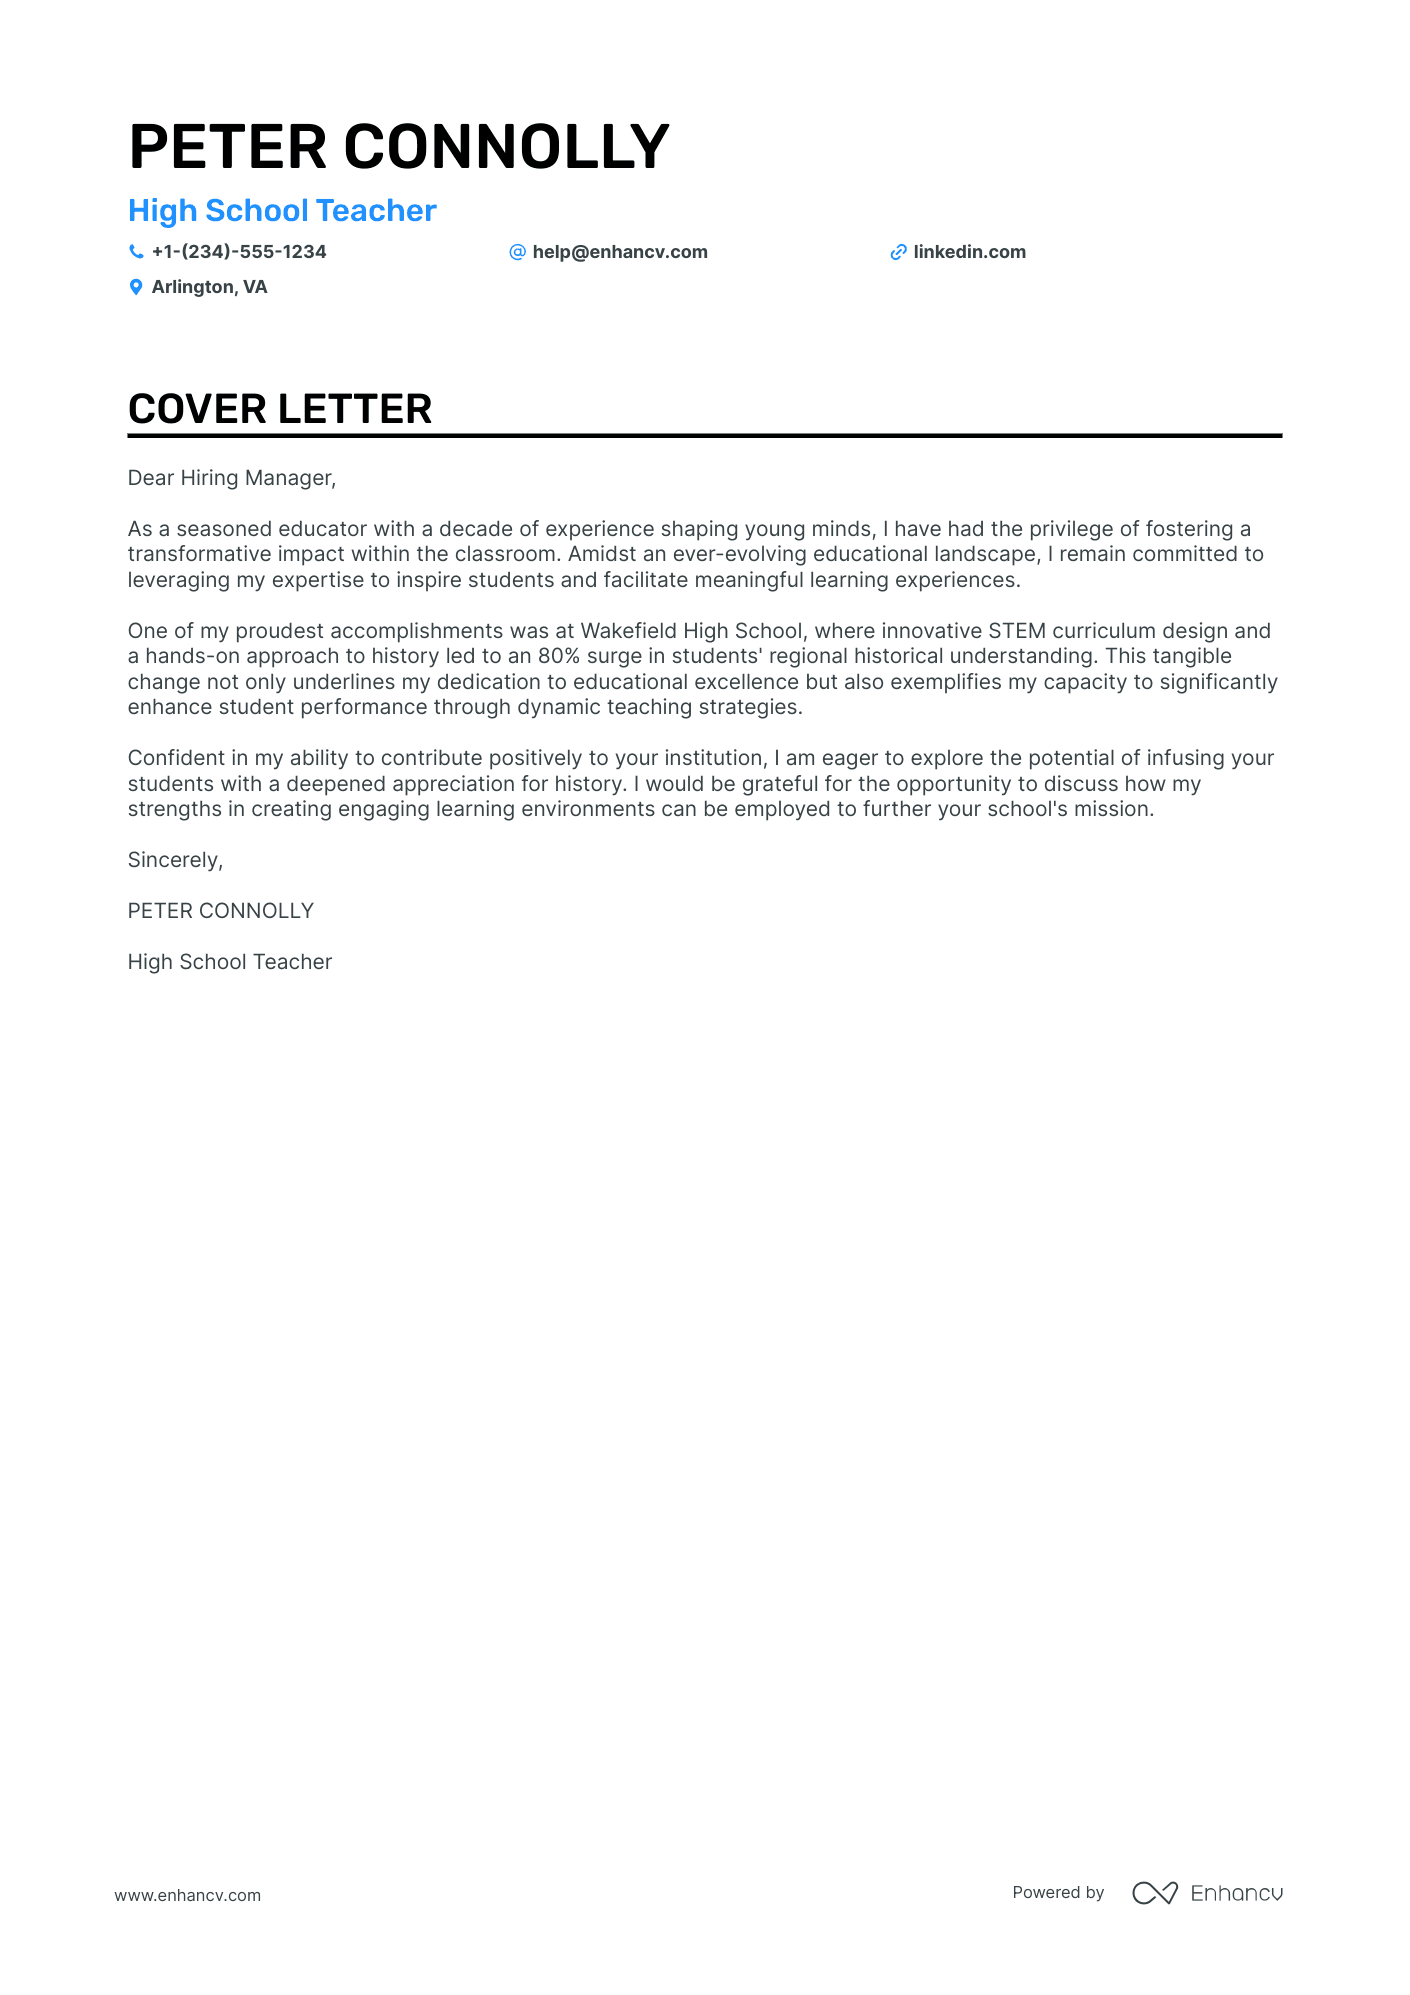 High School Teacher cover letter